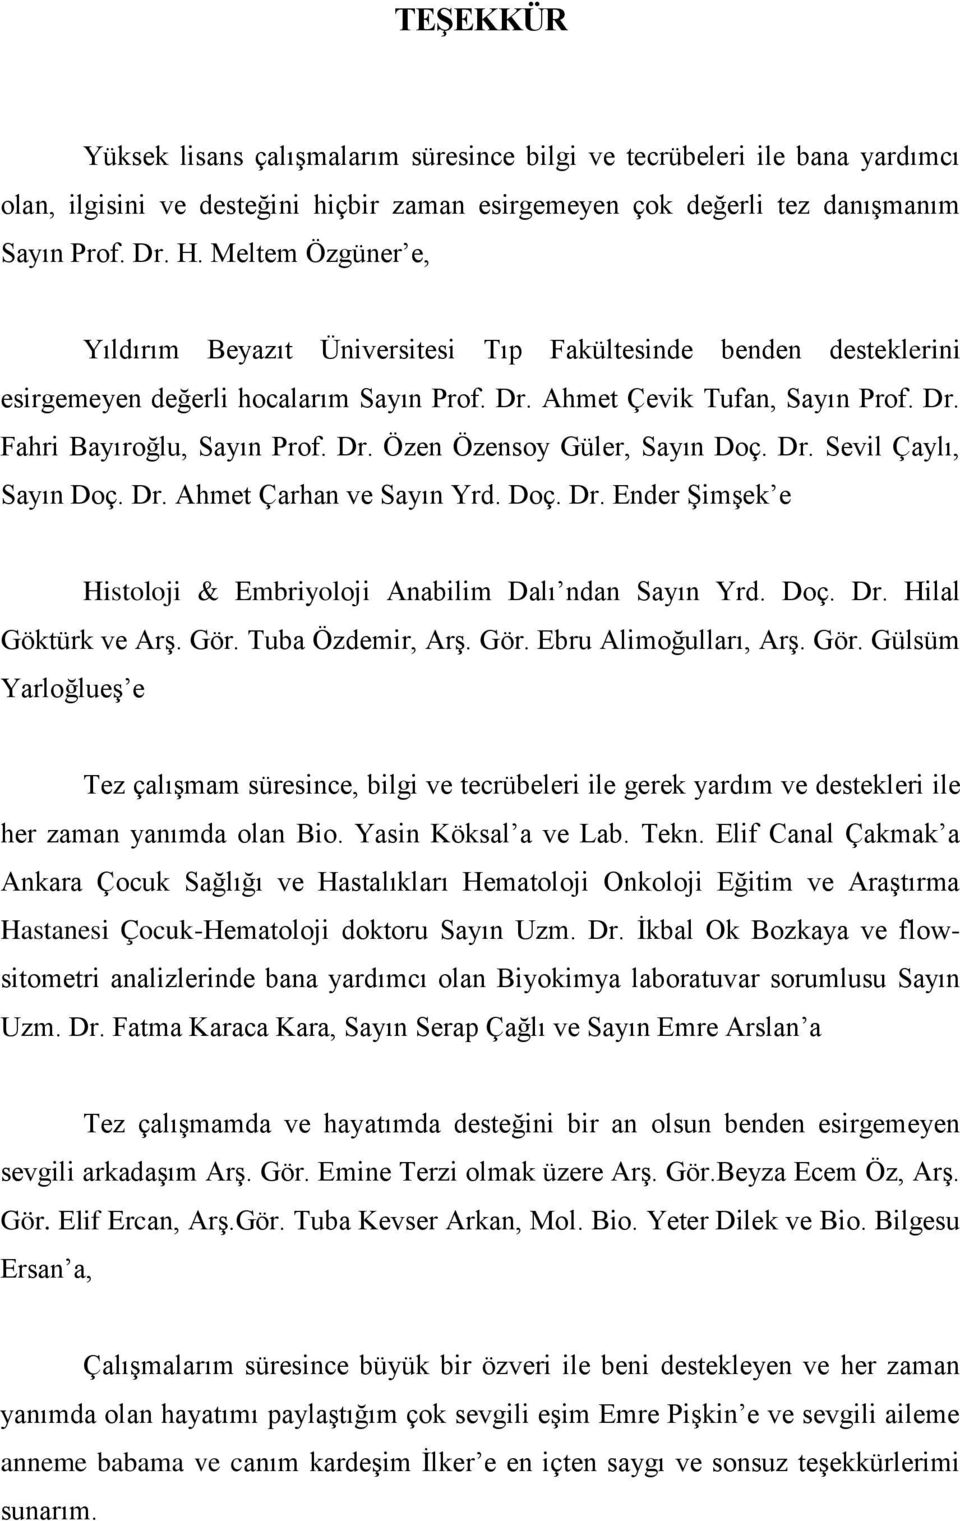 Dr. Sevil Çaylı, Sayın Doç. Dr. Ahmet Çarhan ve Sayın Yrd. Doç. Dr. Ender Şimşek e Histoloji & Embriyoloji Anabilim Dalı ndan Sayın Yrd. Doç. Dr. Hilal Göktürk ve Arş. Gör. Tuba Özdemir, Arş. Gör. Ebru Alimoğulları, Arş.